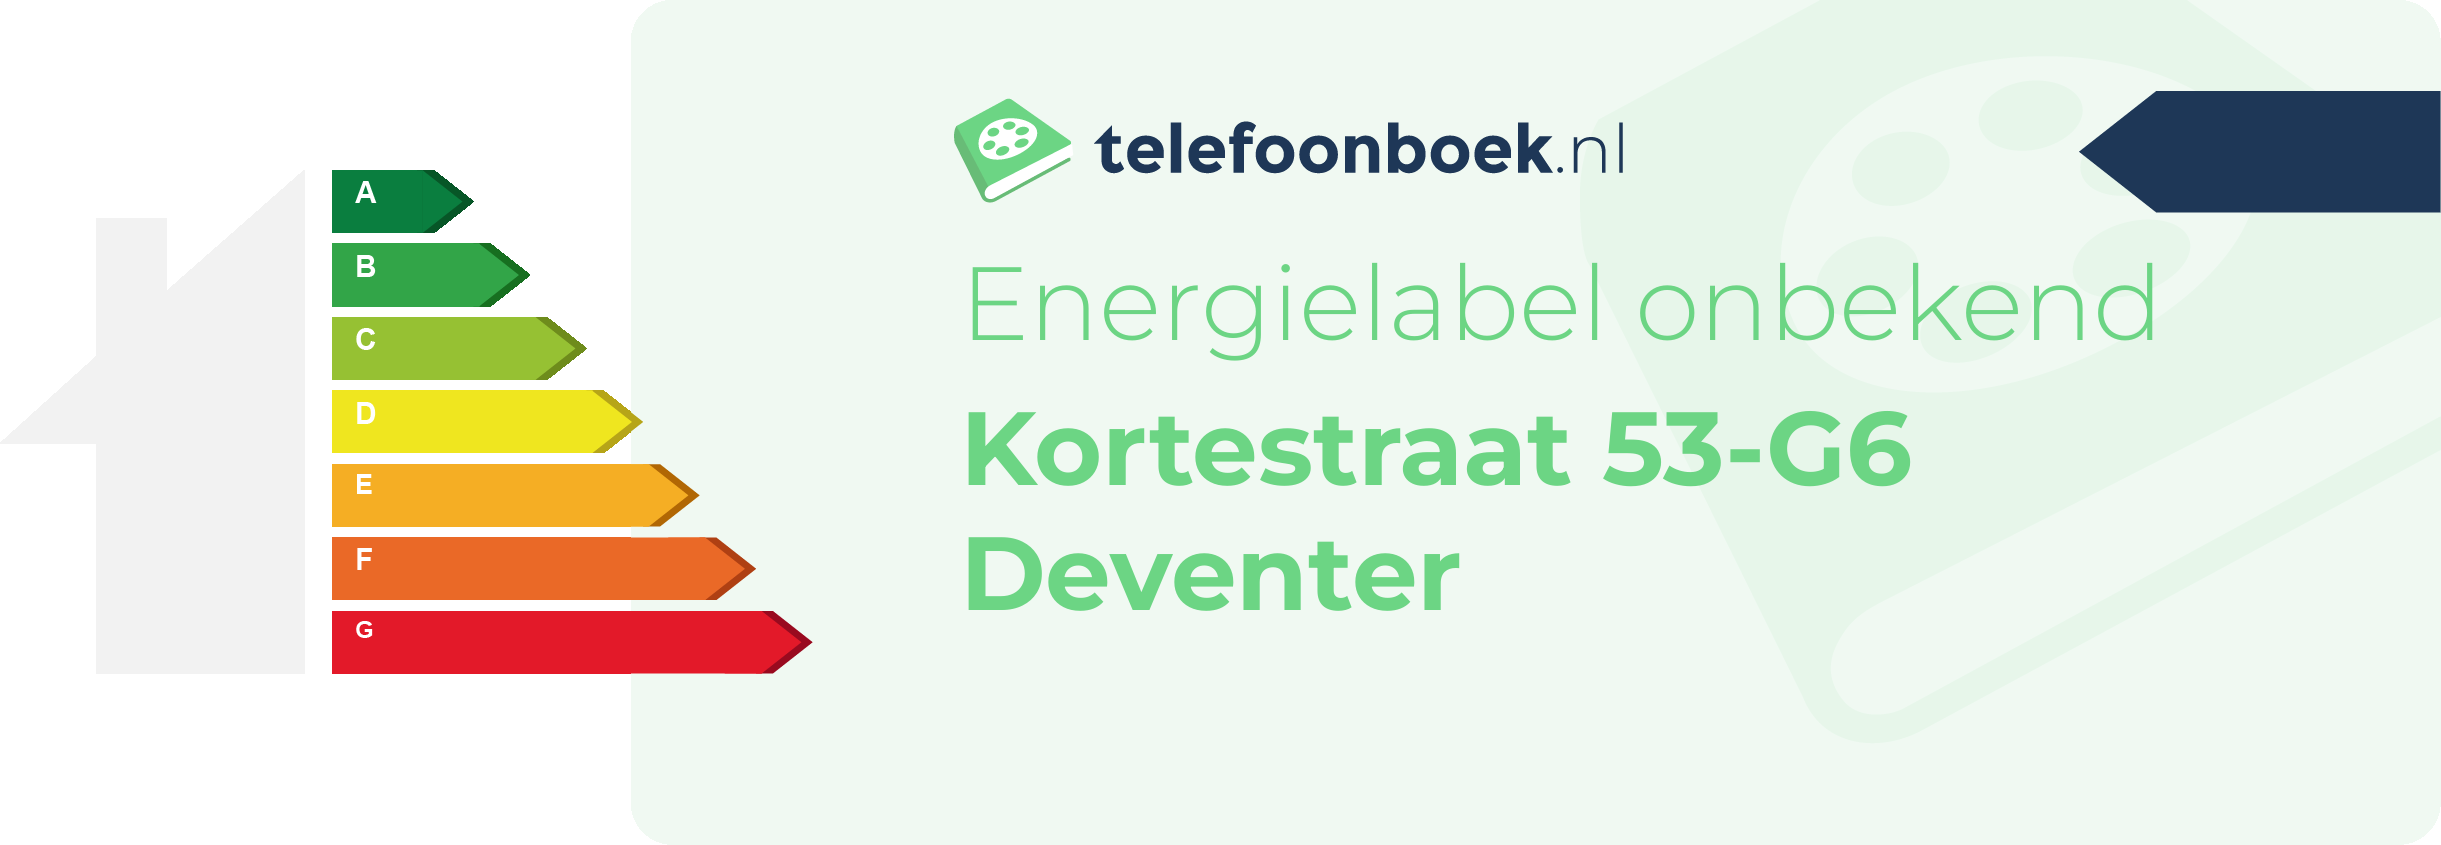 Energielabel Kortestraat 53-G6 Deventer